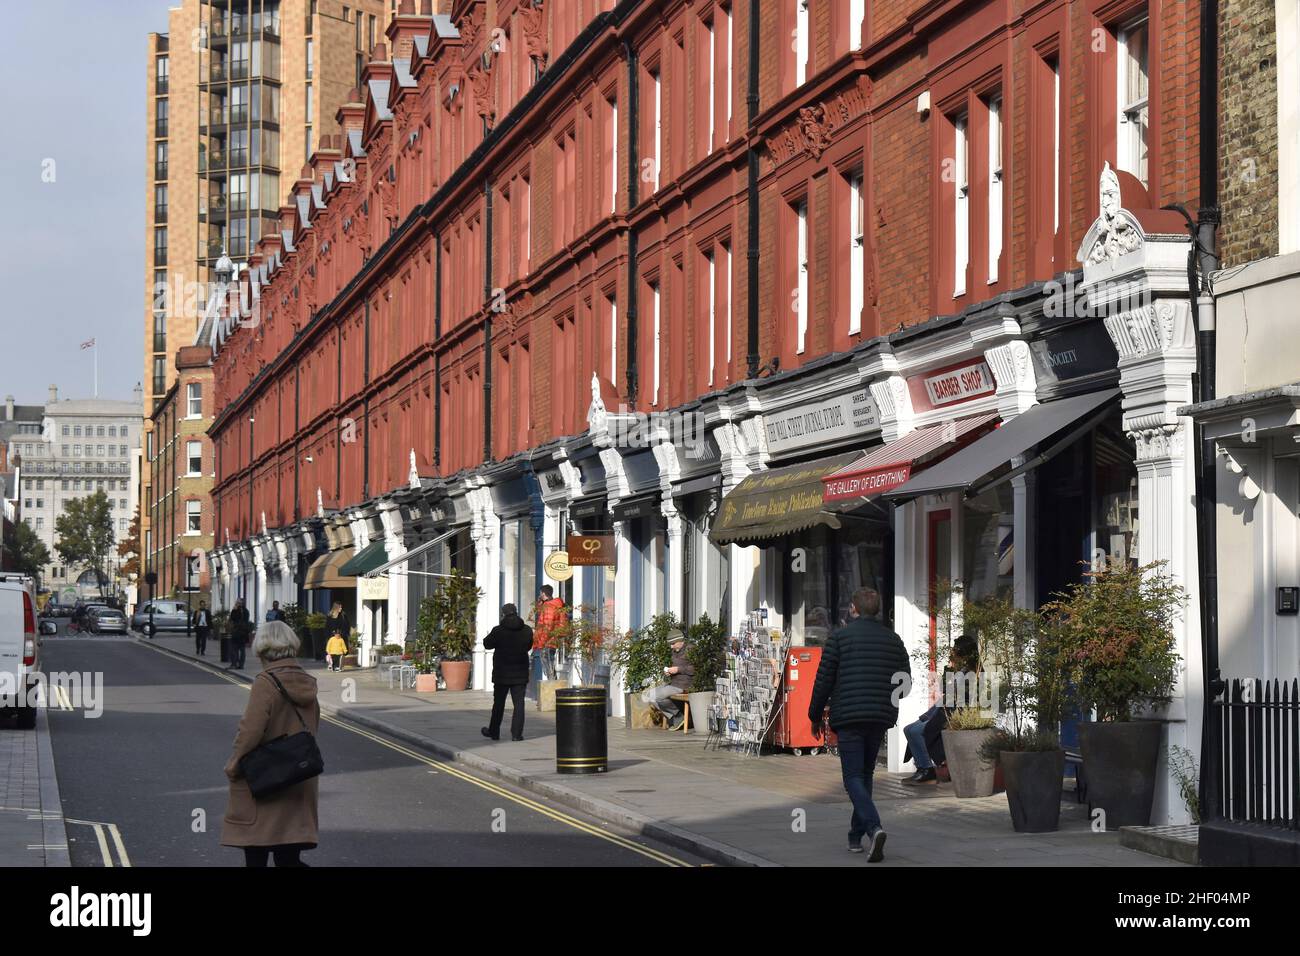 Stylish buildings with shopfronts, Chiltern street Marylebone London UK. Stock Photo